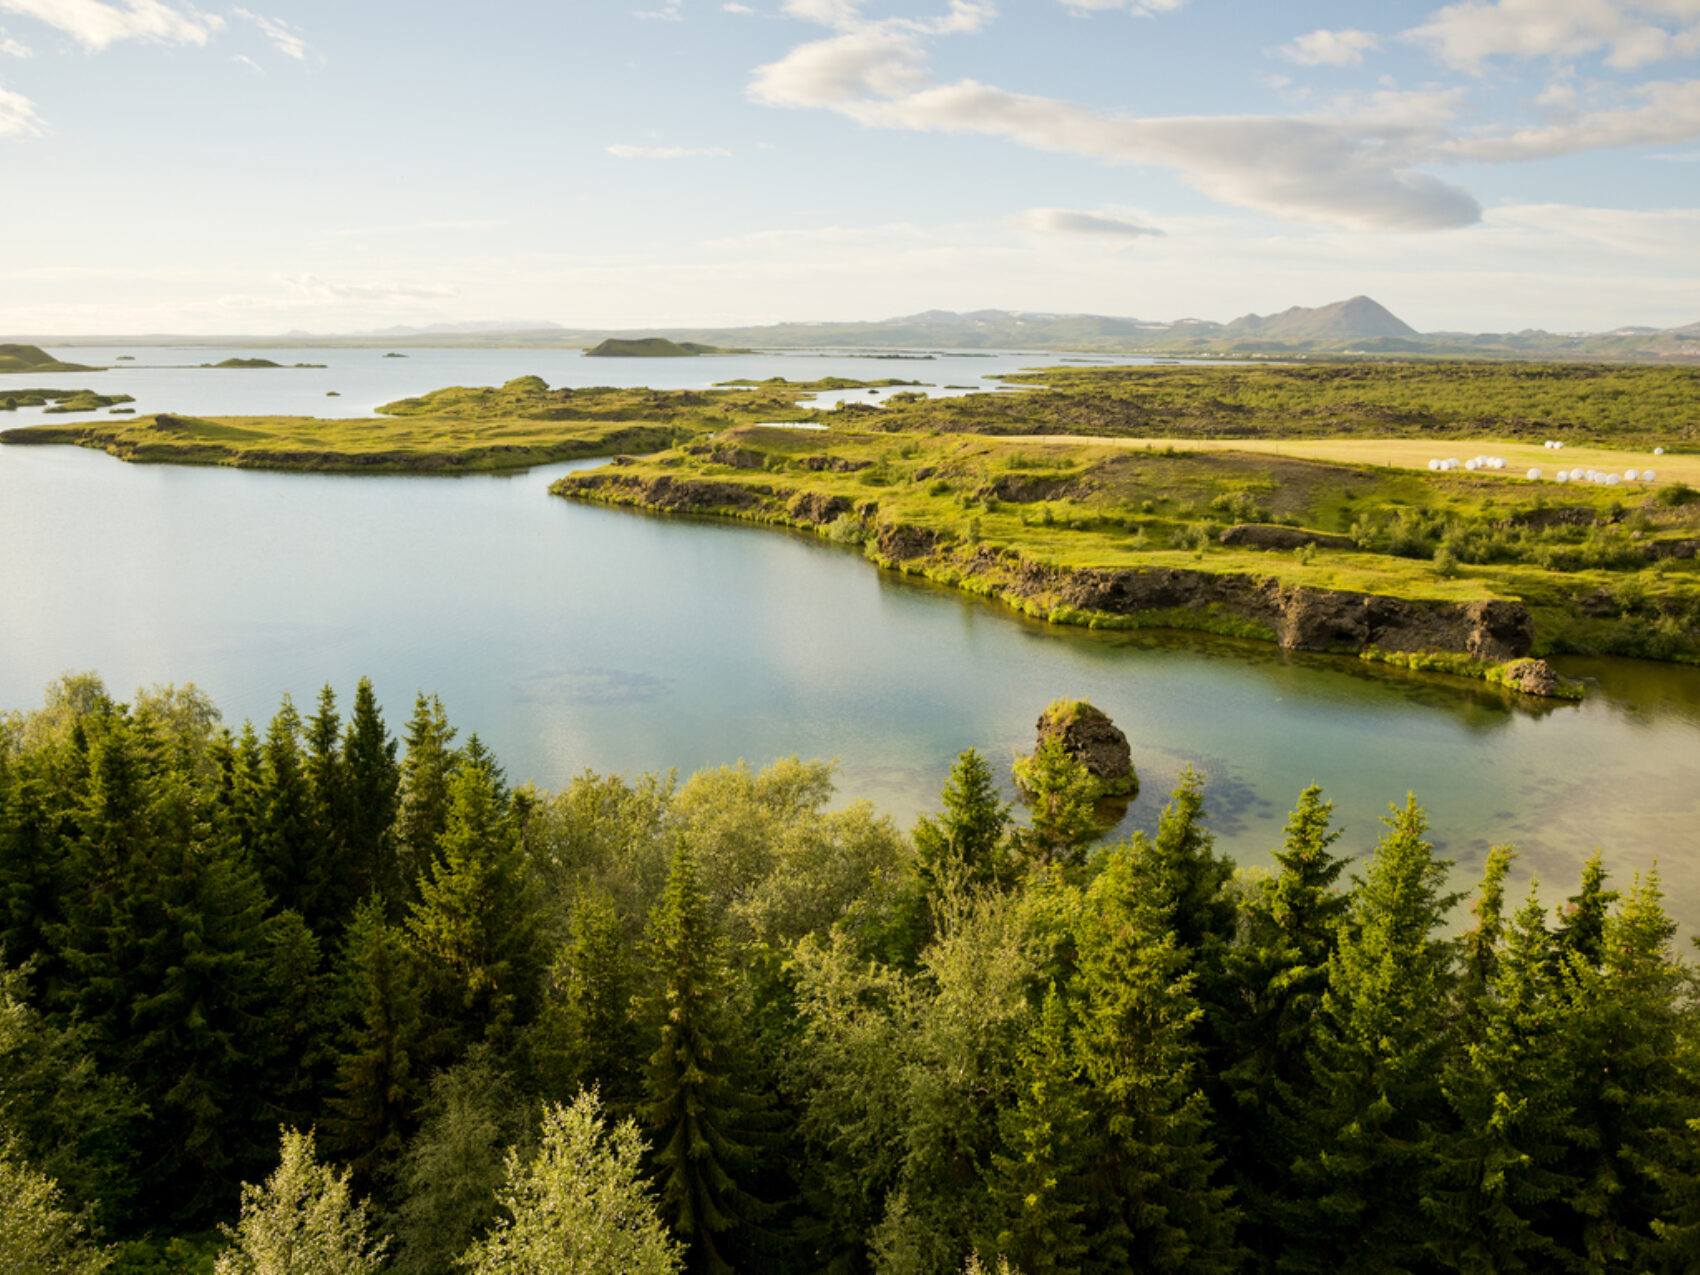 Vulkangebiet Mývatn in Nordisland, Wald im Vordergrund, Wasser und grüne Hochebene im Hintergrund, Foto: Thomas Linkel